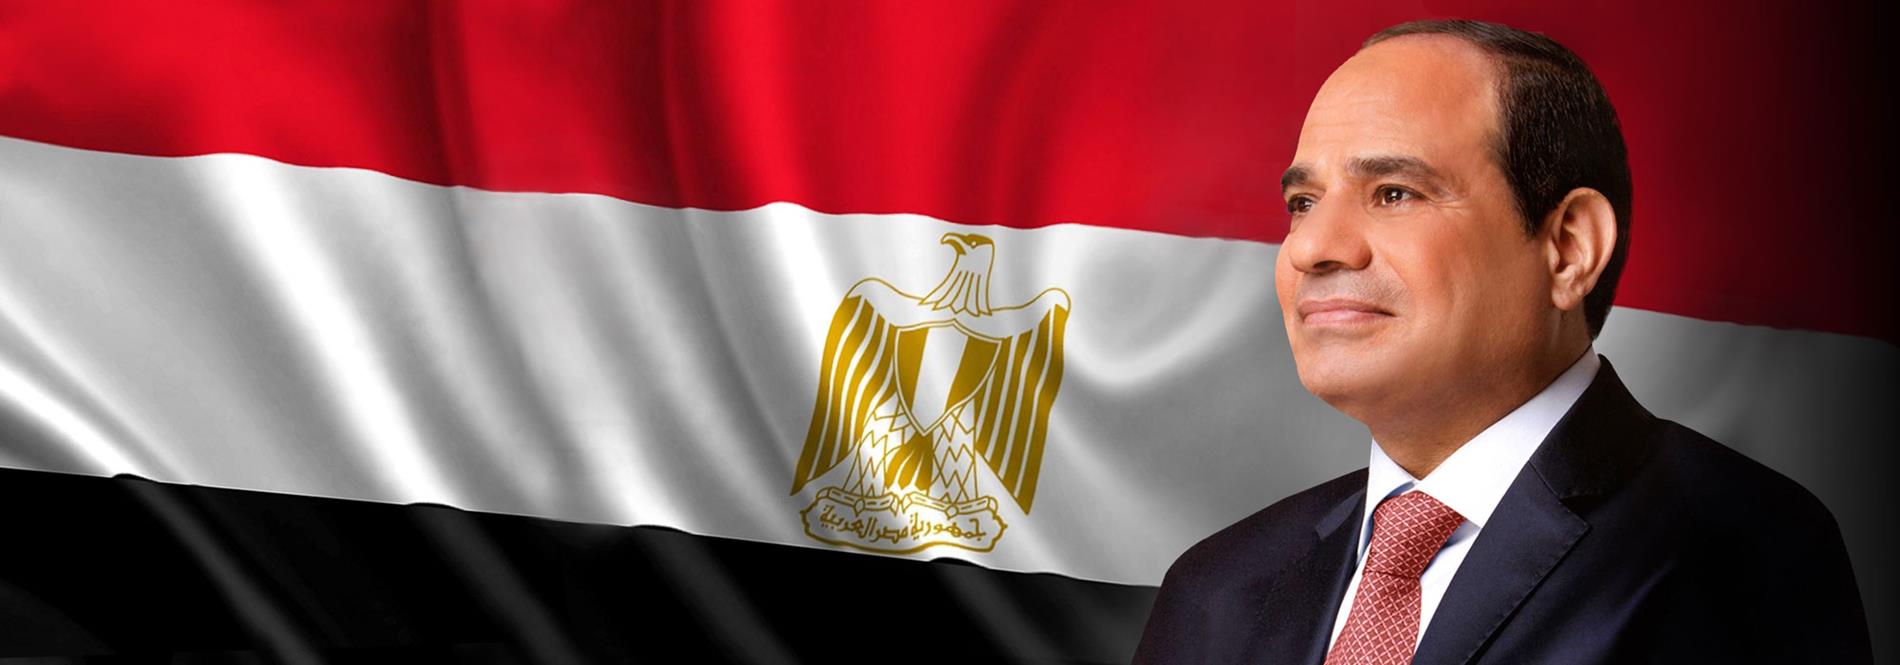 الرئيس عبد الفتاح السيسي يتوجه بالتهنئة لنادي الزمالك على فوزه الرائع اليوم